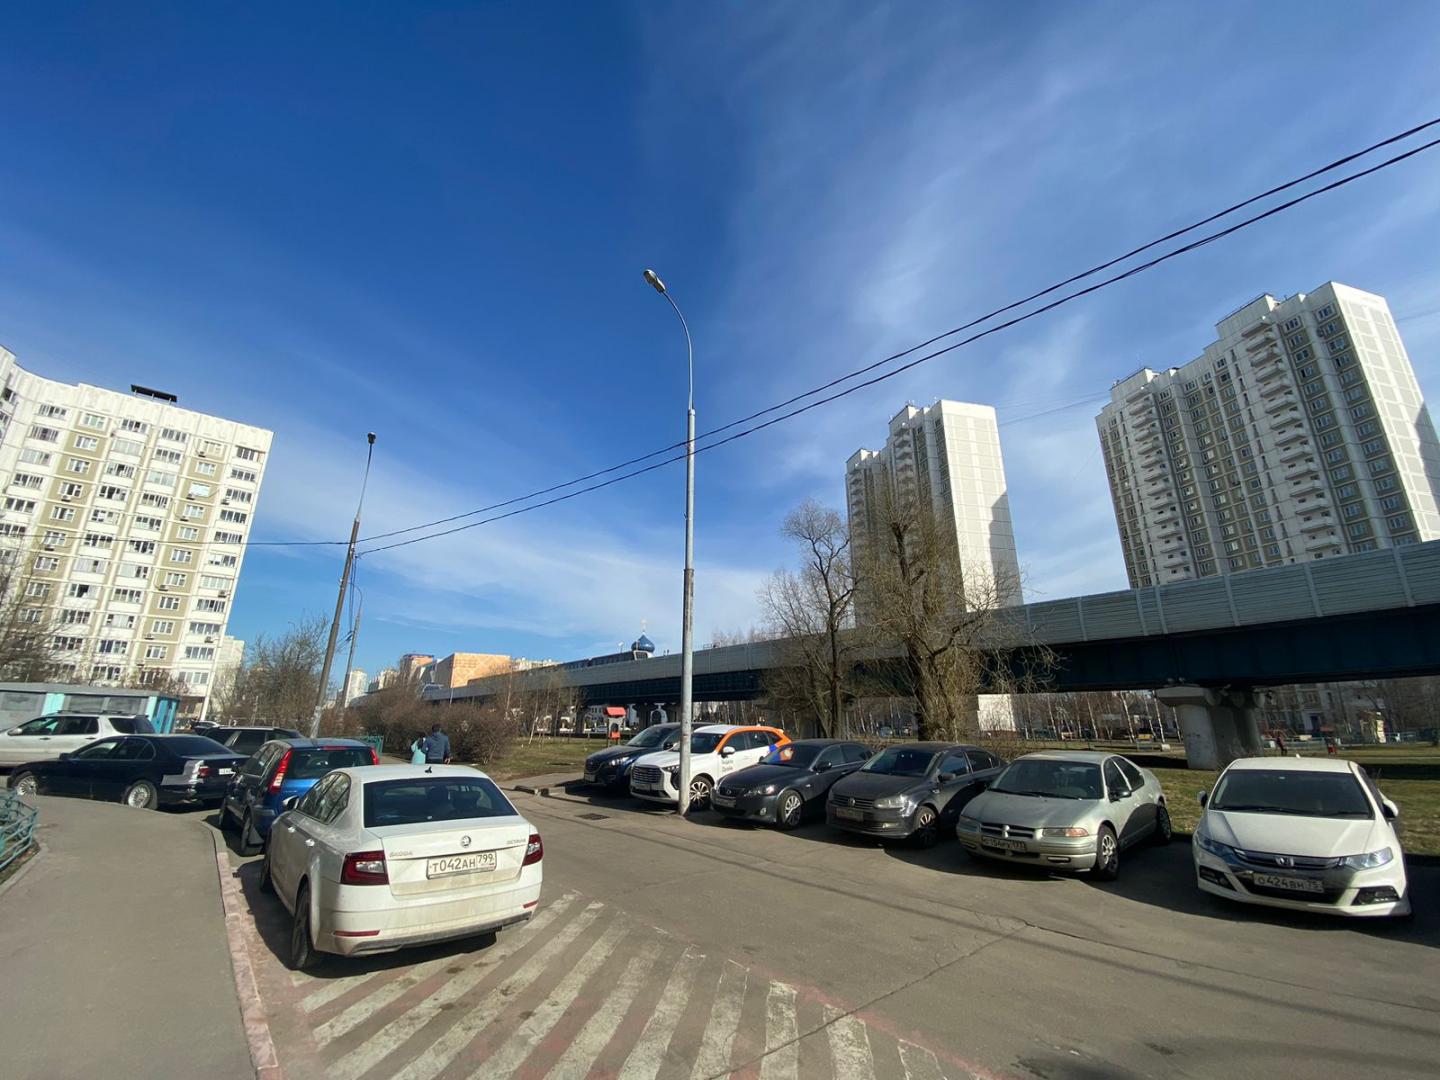 Продам недвижимость в Москве по адресу улица Адмирала Лазарева, 11, площадь 177 квм Недвижимость Москва (Россия)  Интенсивный пешеходный трафик вдоль помещения